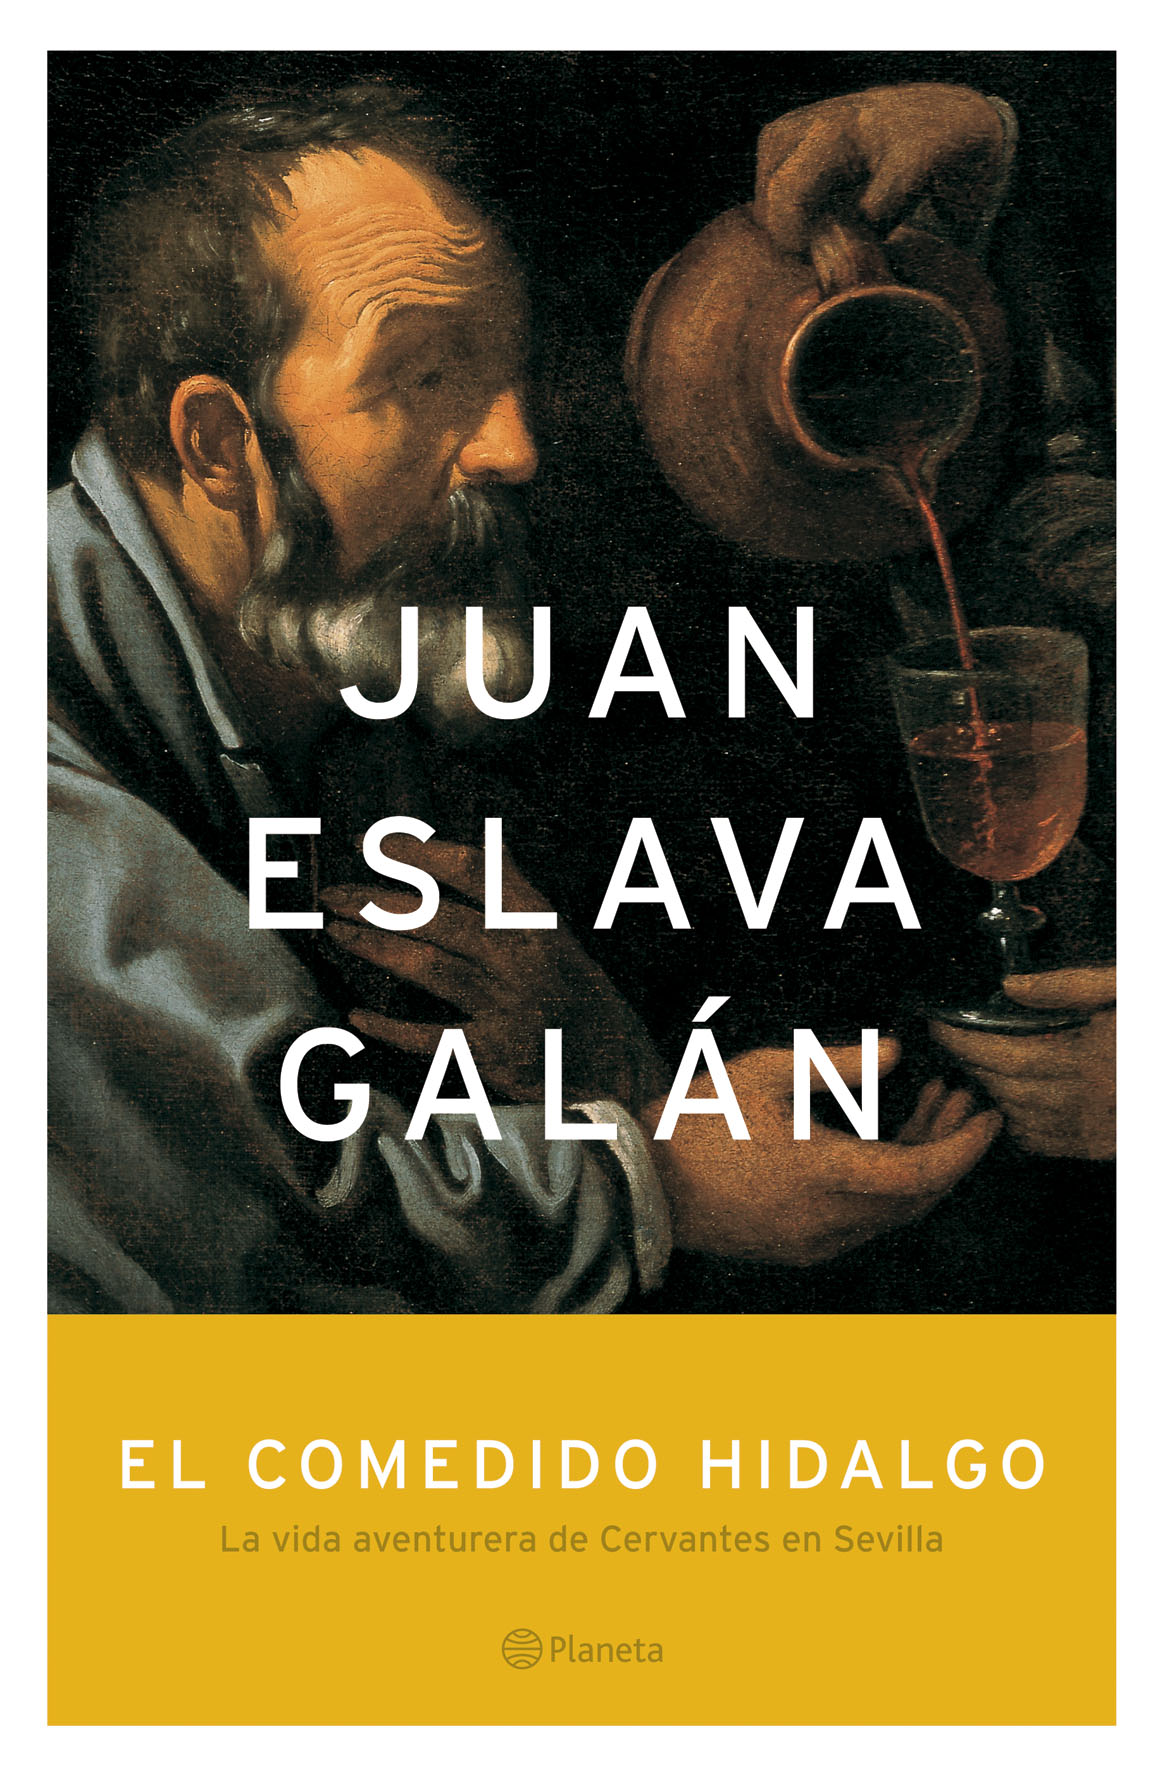 Juan Eslava Galán - El comedido hidalgo